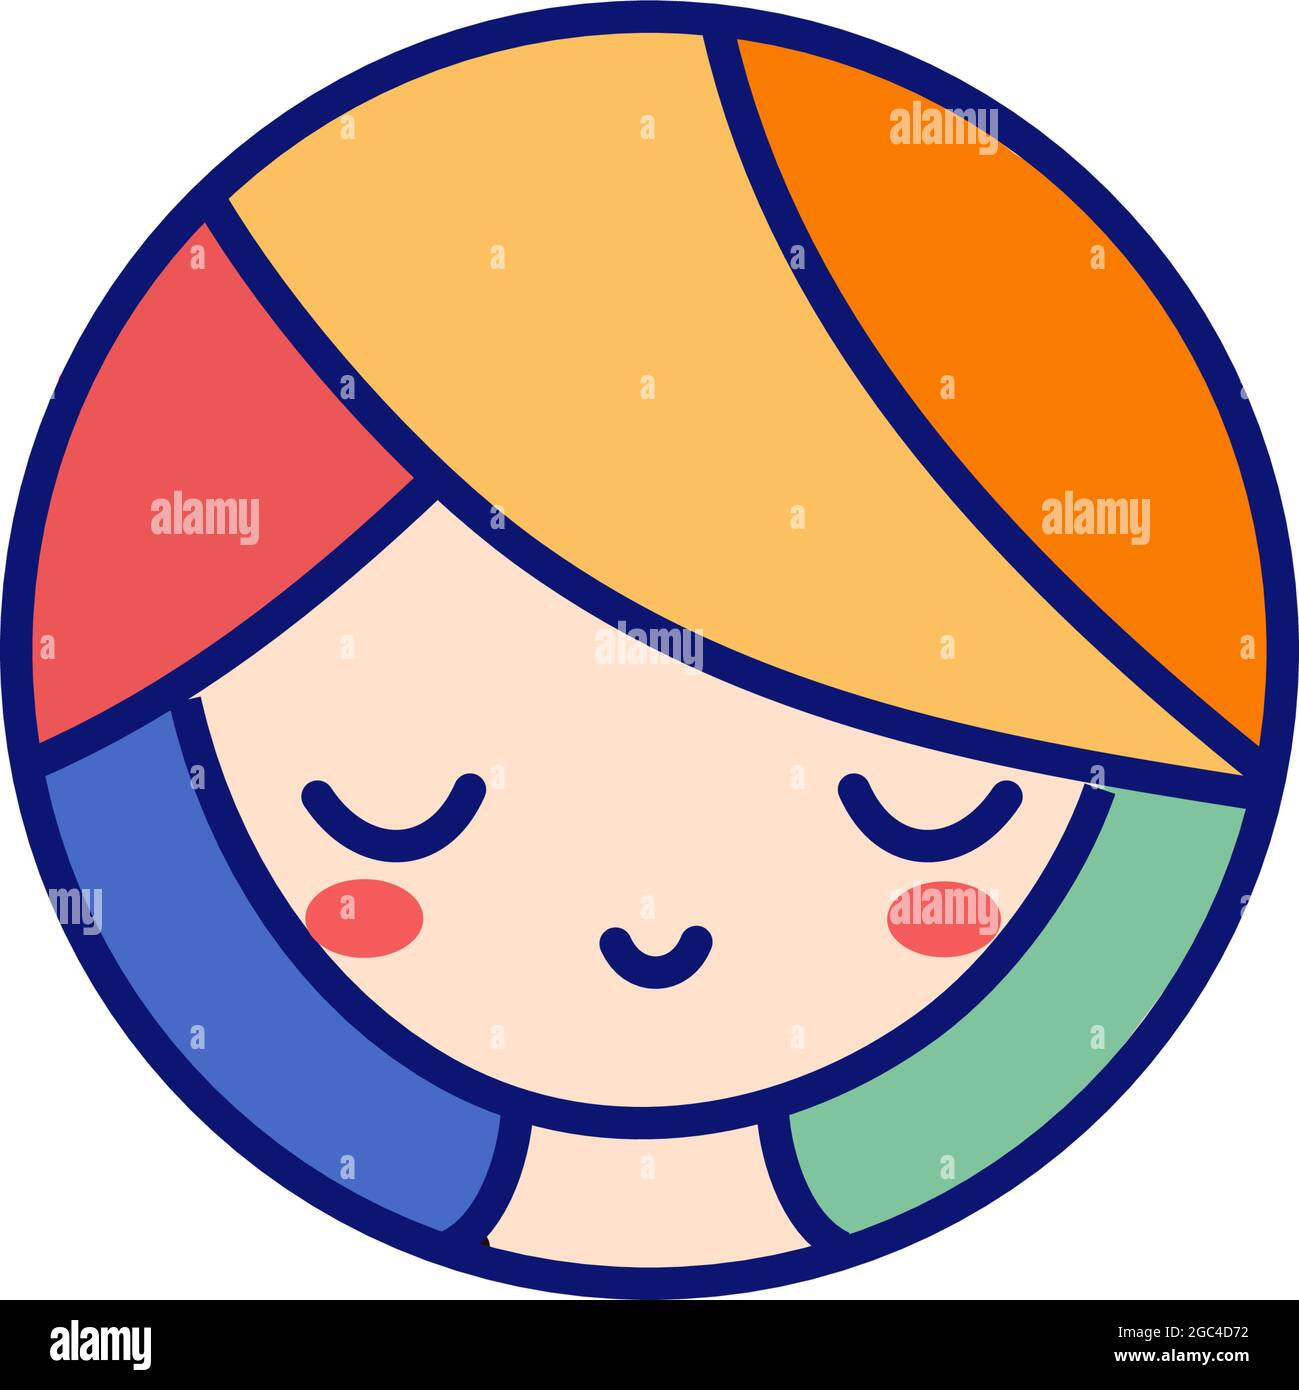 Vektor-Illustration stilisierte Mädchen mit bunten Ohren lächelnd. Rote Wangen, Haare mit blauen, grünen, gelben, roten und orangen Strängen Stock Vektor